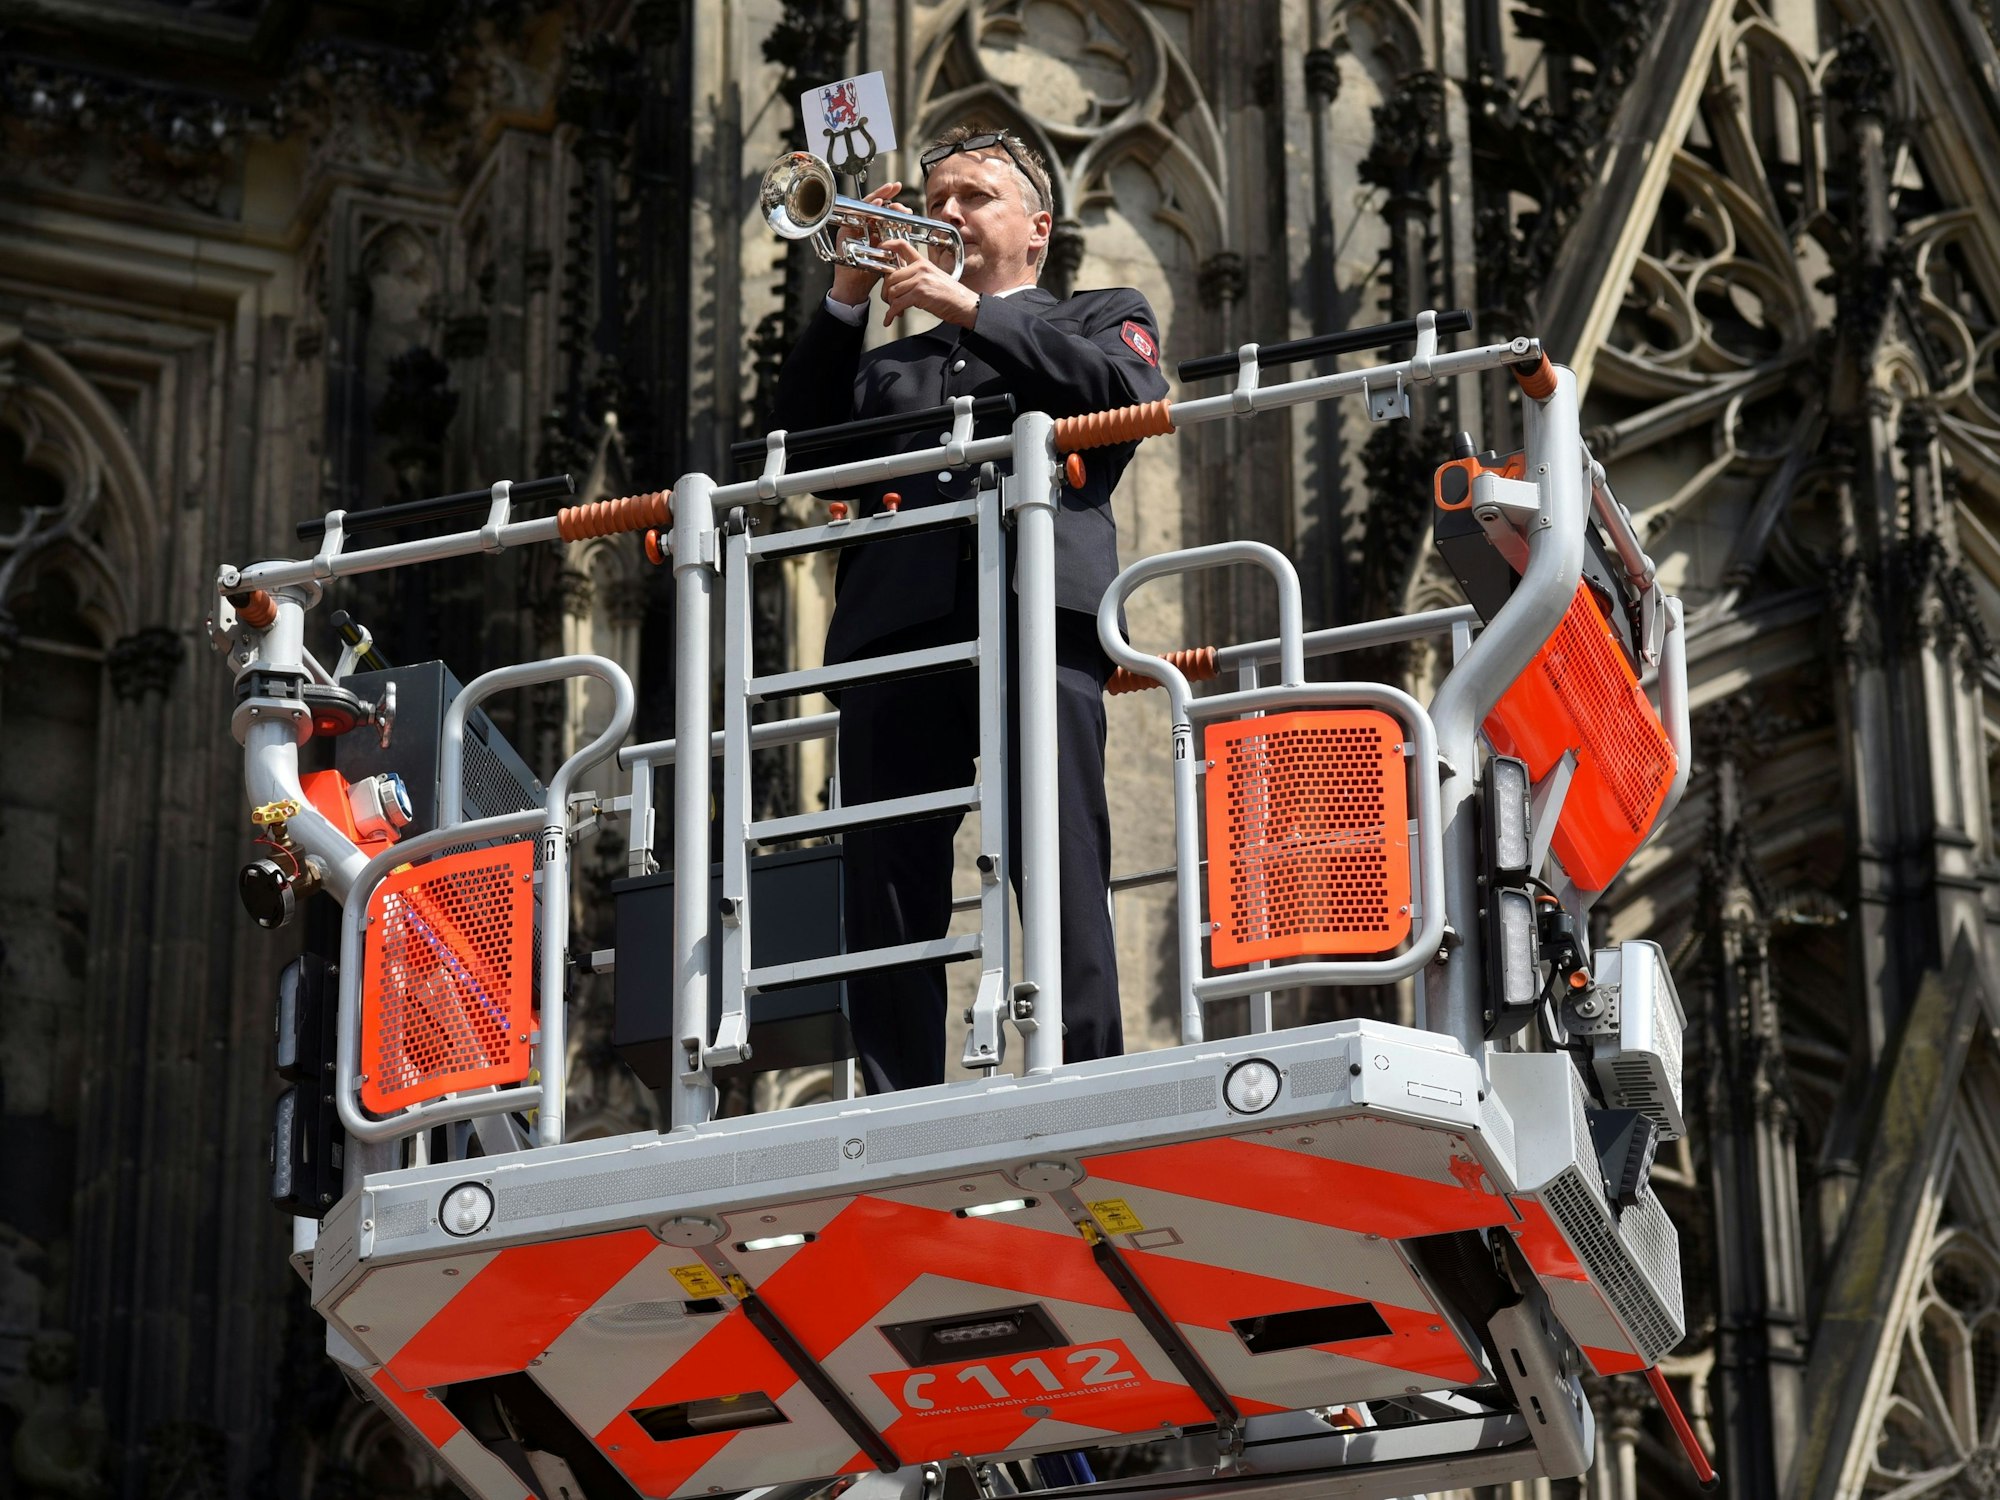 02.06.2022, Köln: Die Feuerwehren Köln und Düsseldorf gratulieren sich gegenseitig jeweils zum 150-jährigen Bestehen auf der Domplatte in Köln.

Trompetenständchen von einem Düsseldorfer Feuerwehrmann


Foto: Csaba Peter Rakoczy